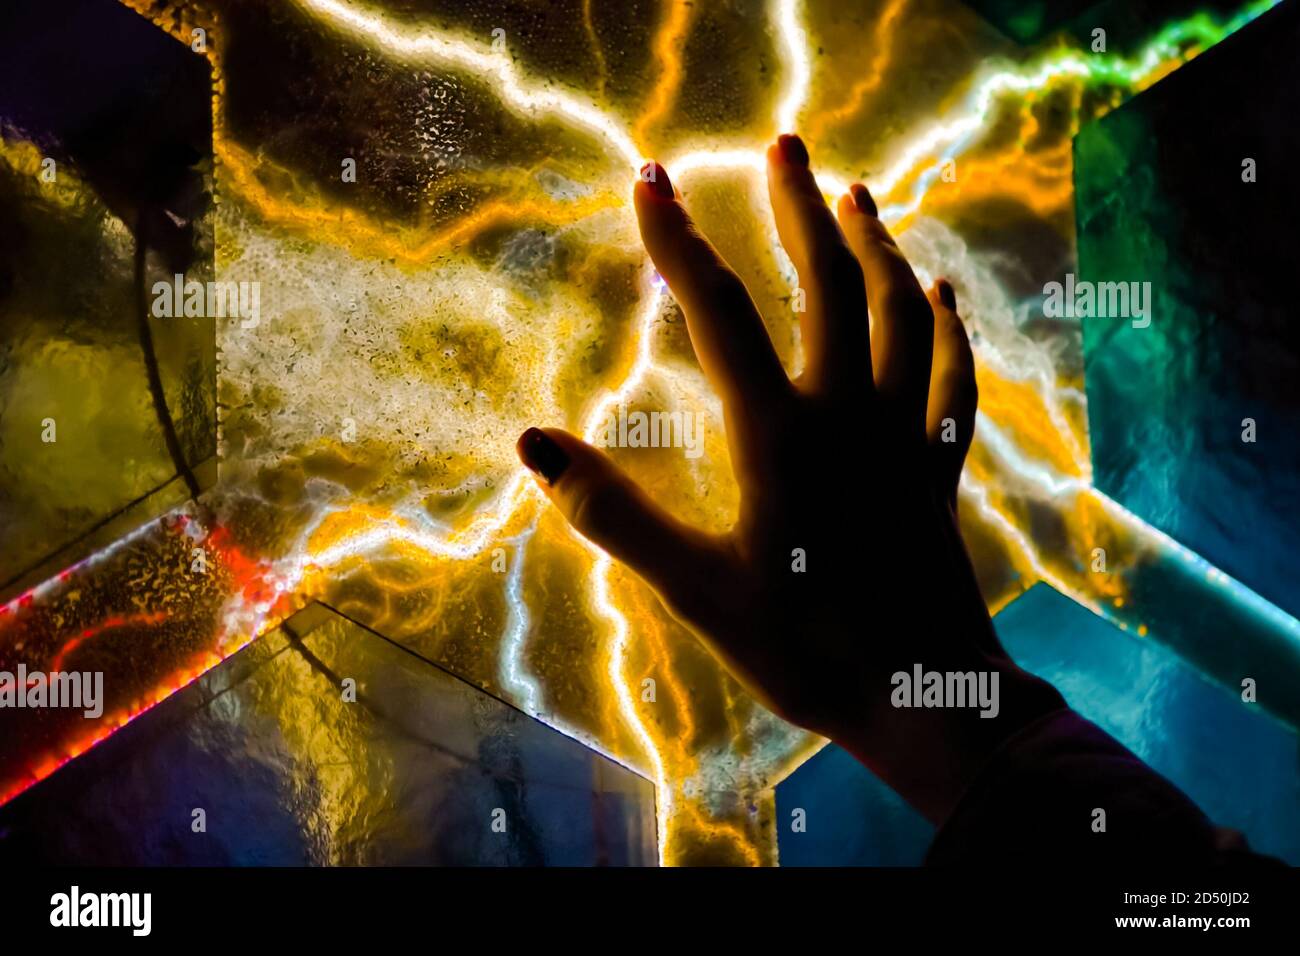 Exposition interactive à écran tactile dans le musée des sciences. Femme à la main touchant l'écran plasma coloré dans la pièce sombre - vue rapprochée. Électricité Banque D'Images